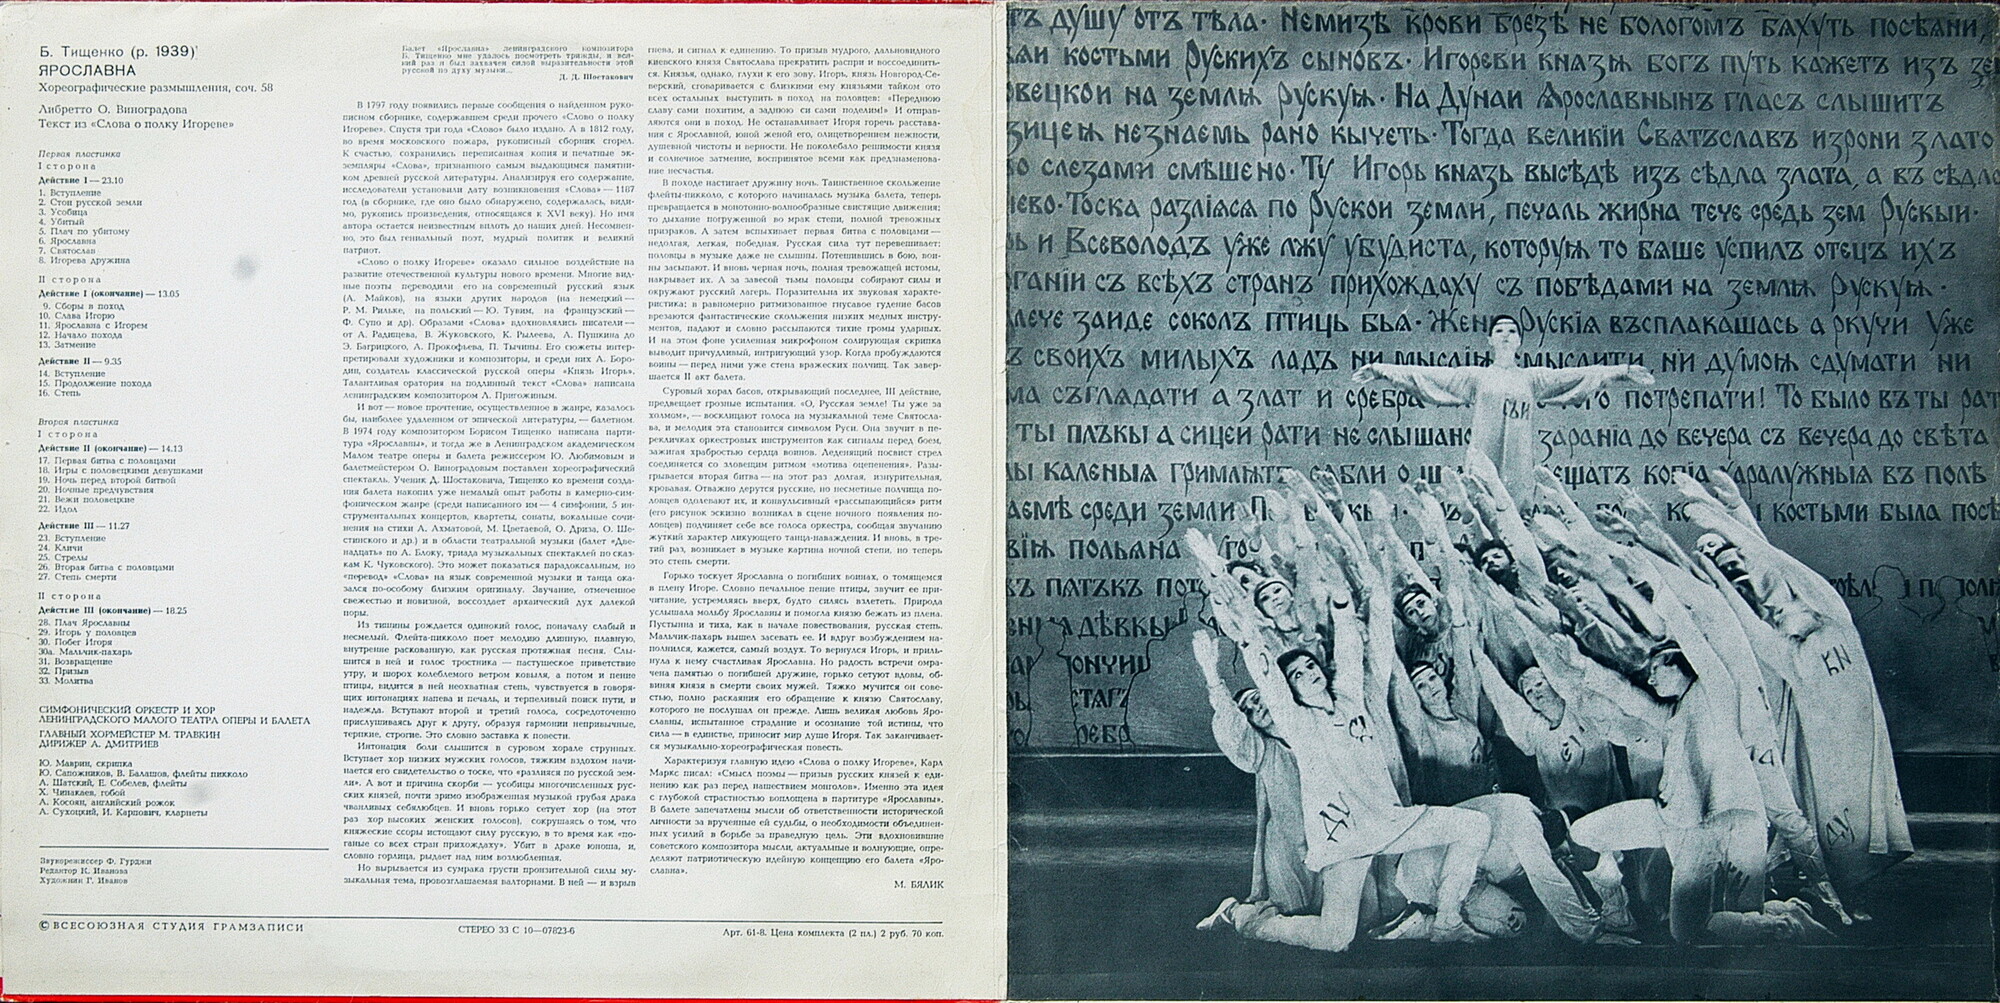 Б. ТИЩЕНКО (1939): «Ярославна», хореографические размышления (балет в трех действиях), соч. 58.